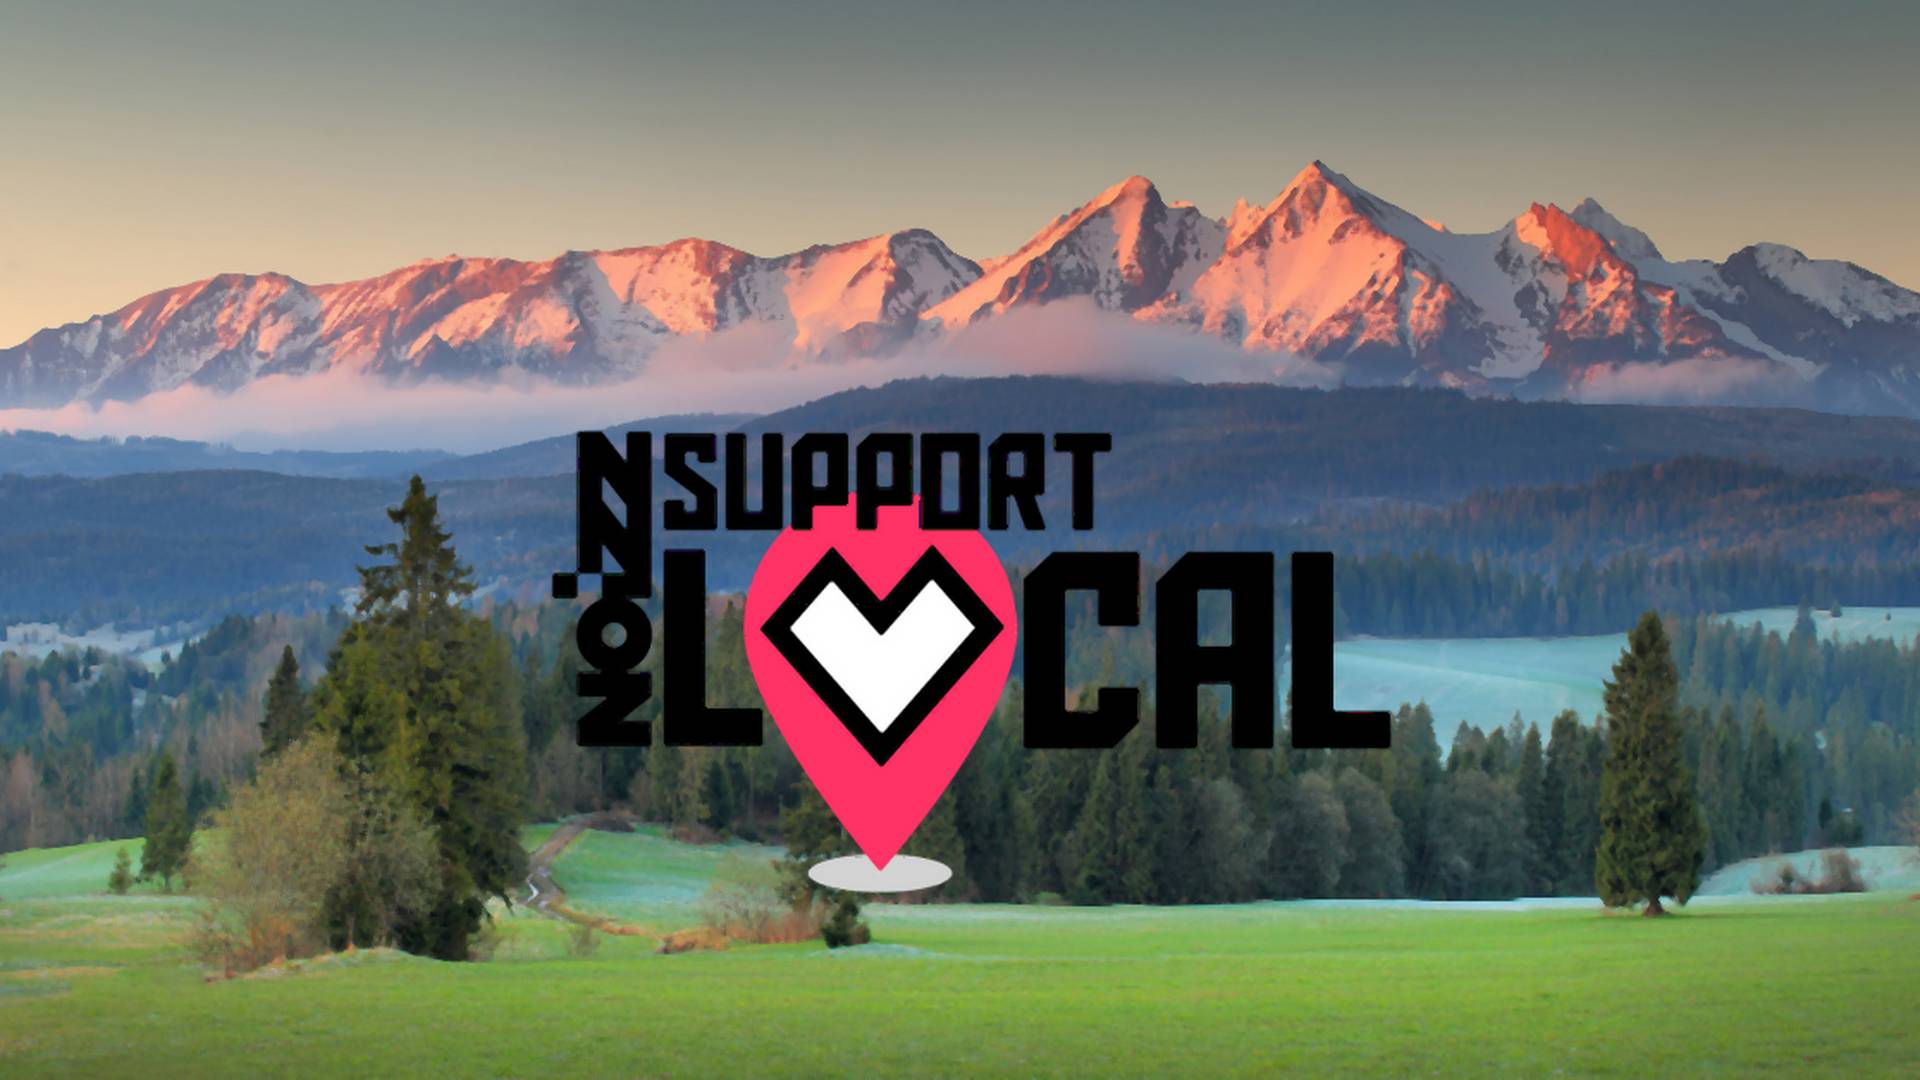 Prečo by si mal aj ty podporovať lokálnu tvorbu? #SupportLocal